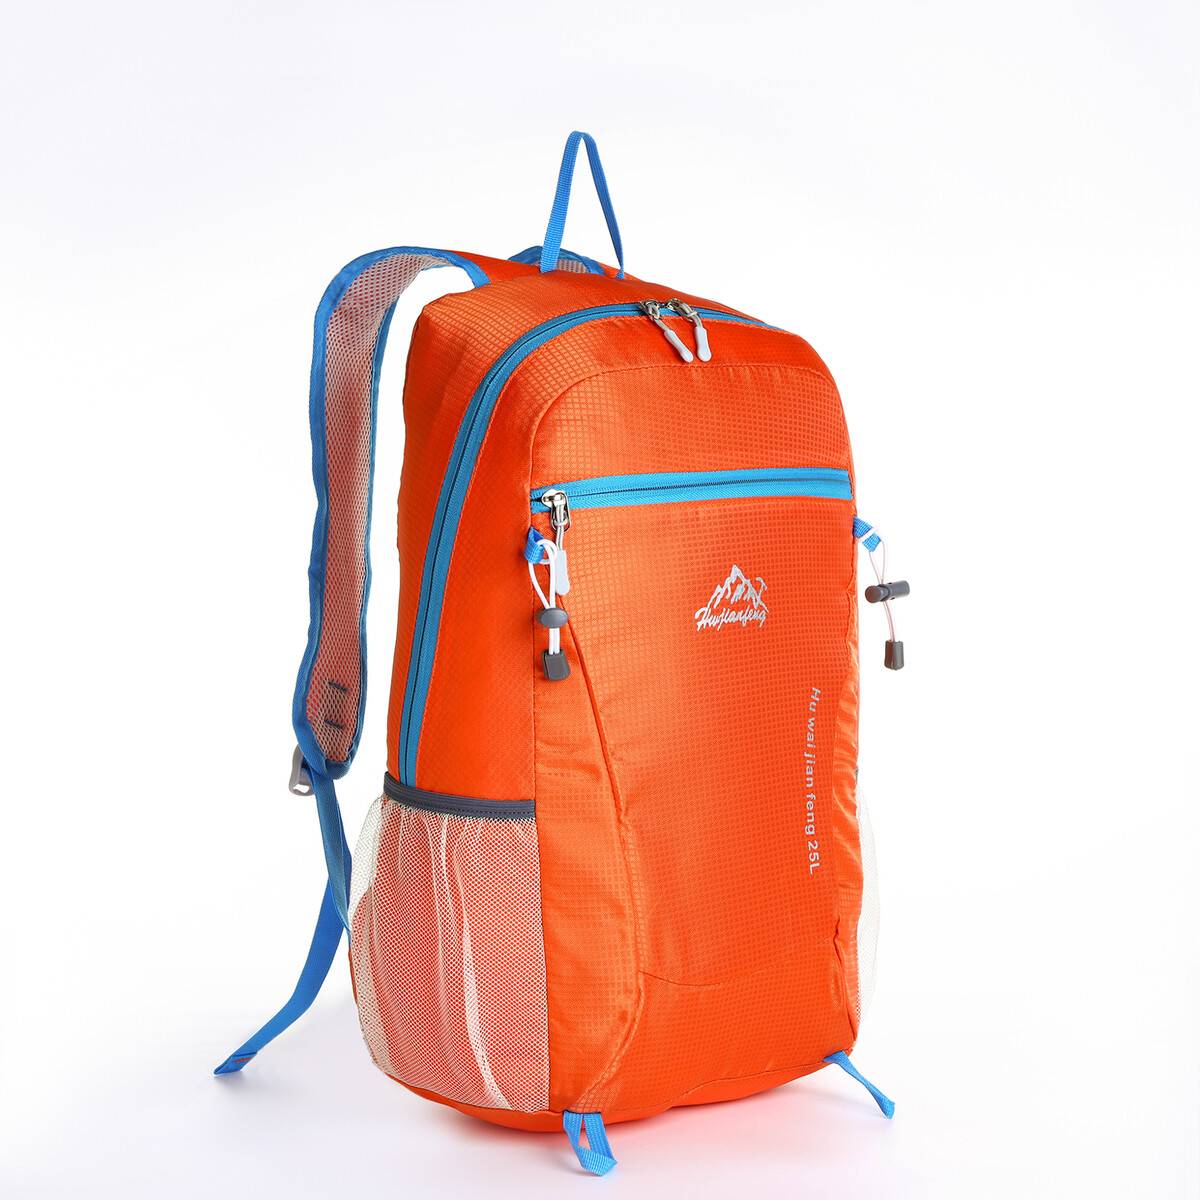 Рюкзак туристический 25л, складной, водонепроницаемый, на молнии, 4 кармана, цвет оранжевый рюкзак nonstopika action бирюзовый складной